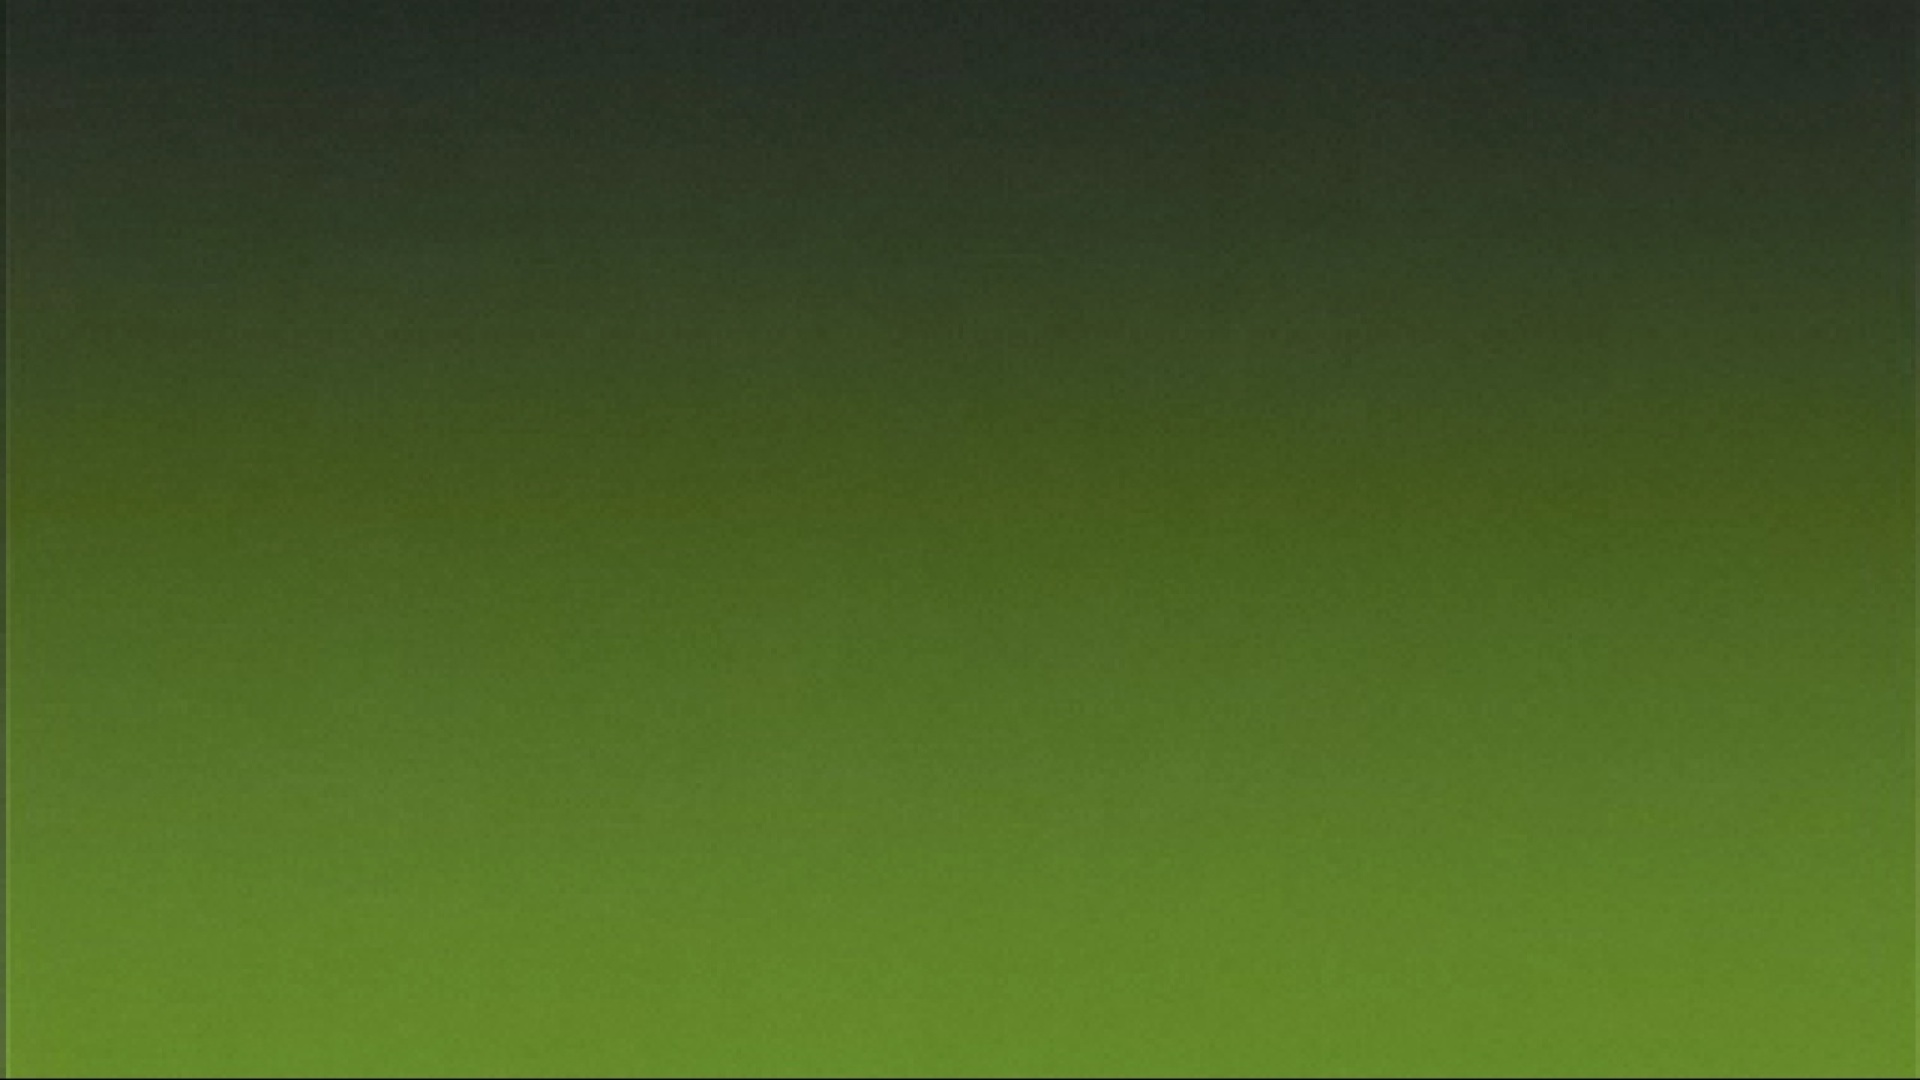 1920x1080 目に優しい緑色系の きれいな壁紙 フルhd 1920x1080 目に優しい緑色系の きれいな壁紙 フルhd Naver まとめ